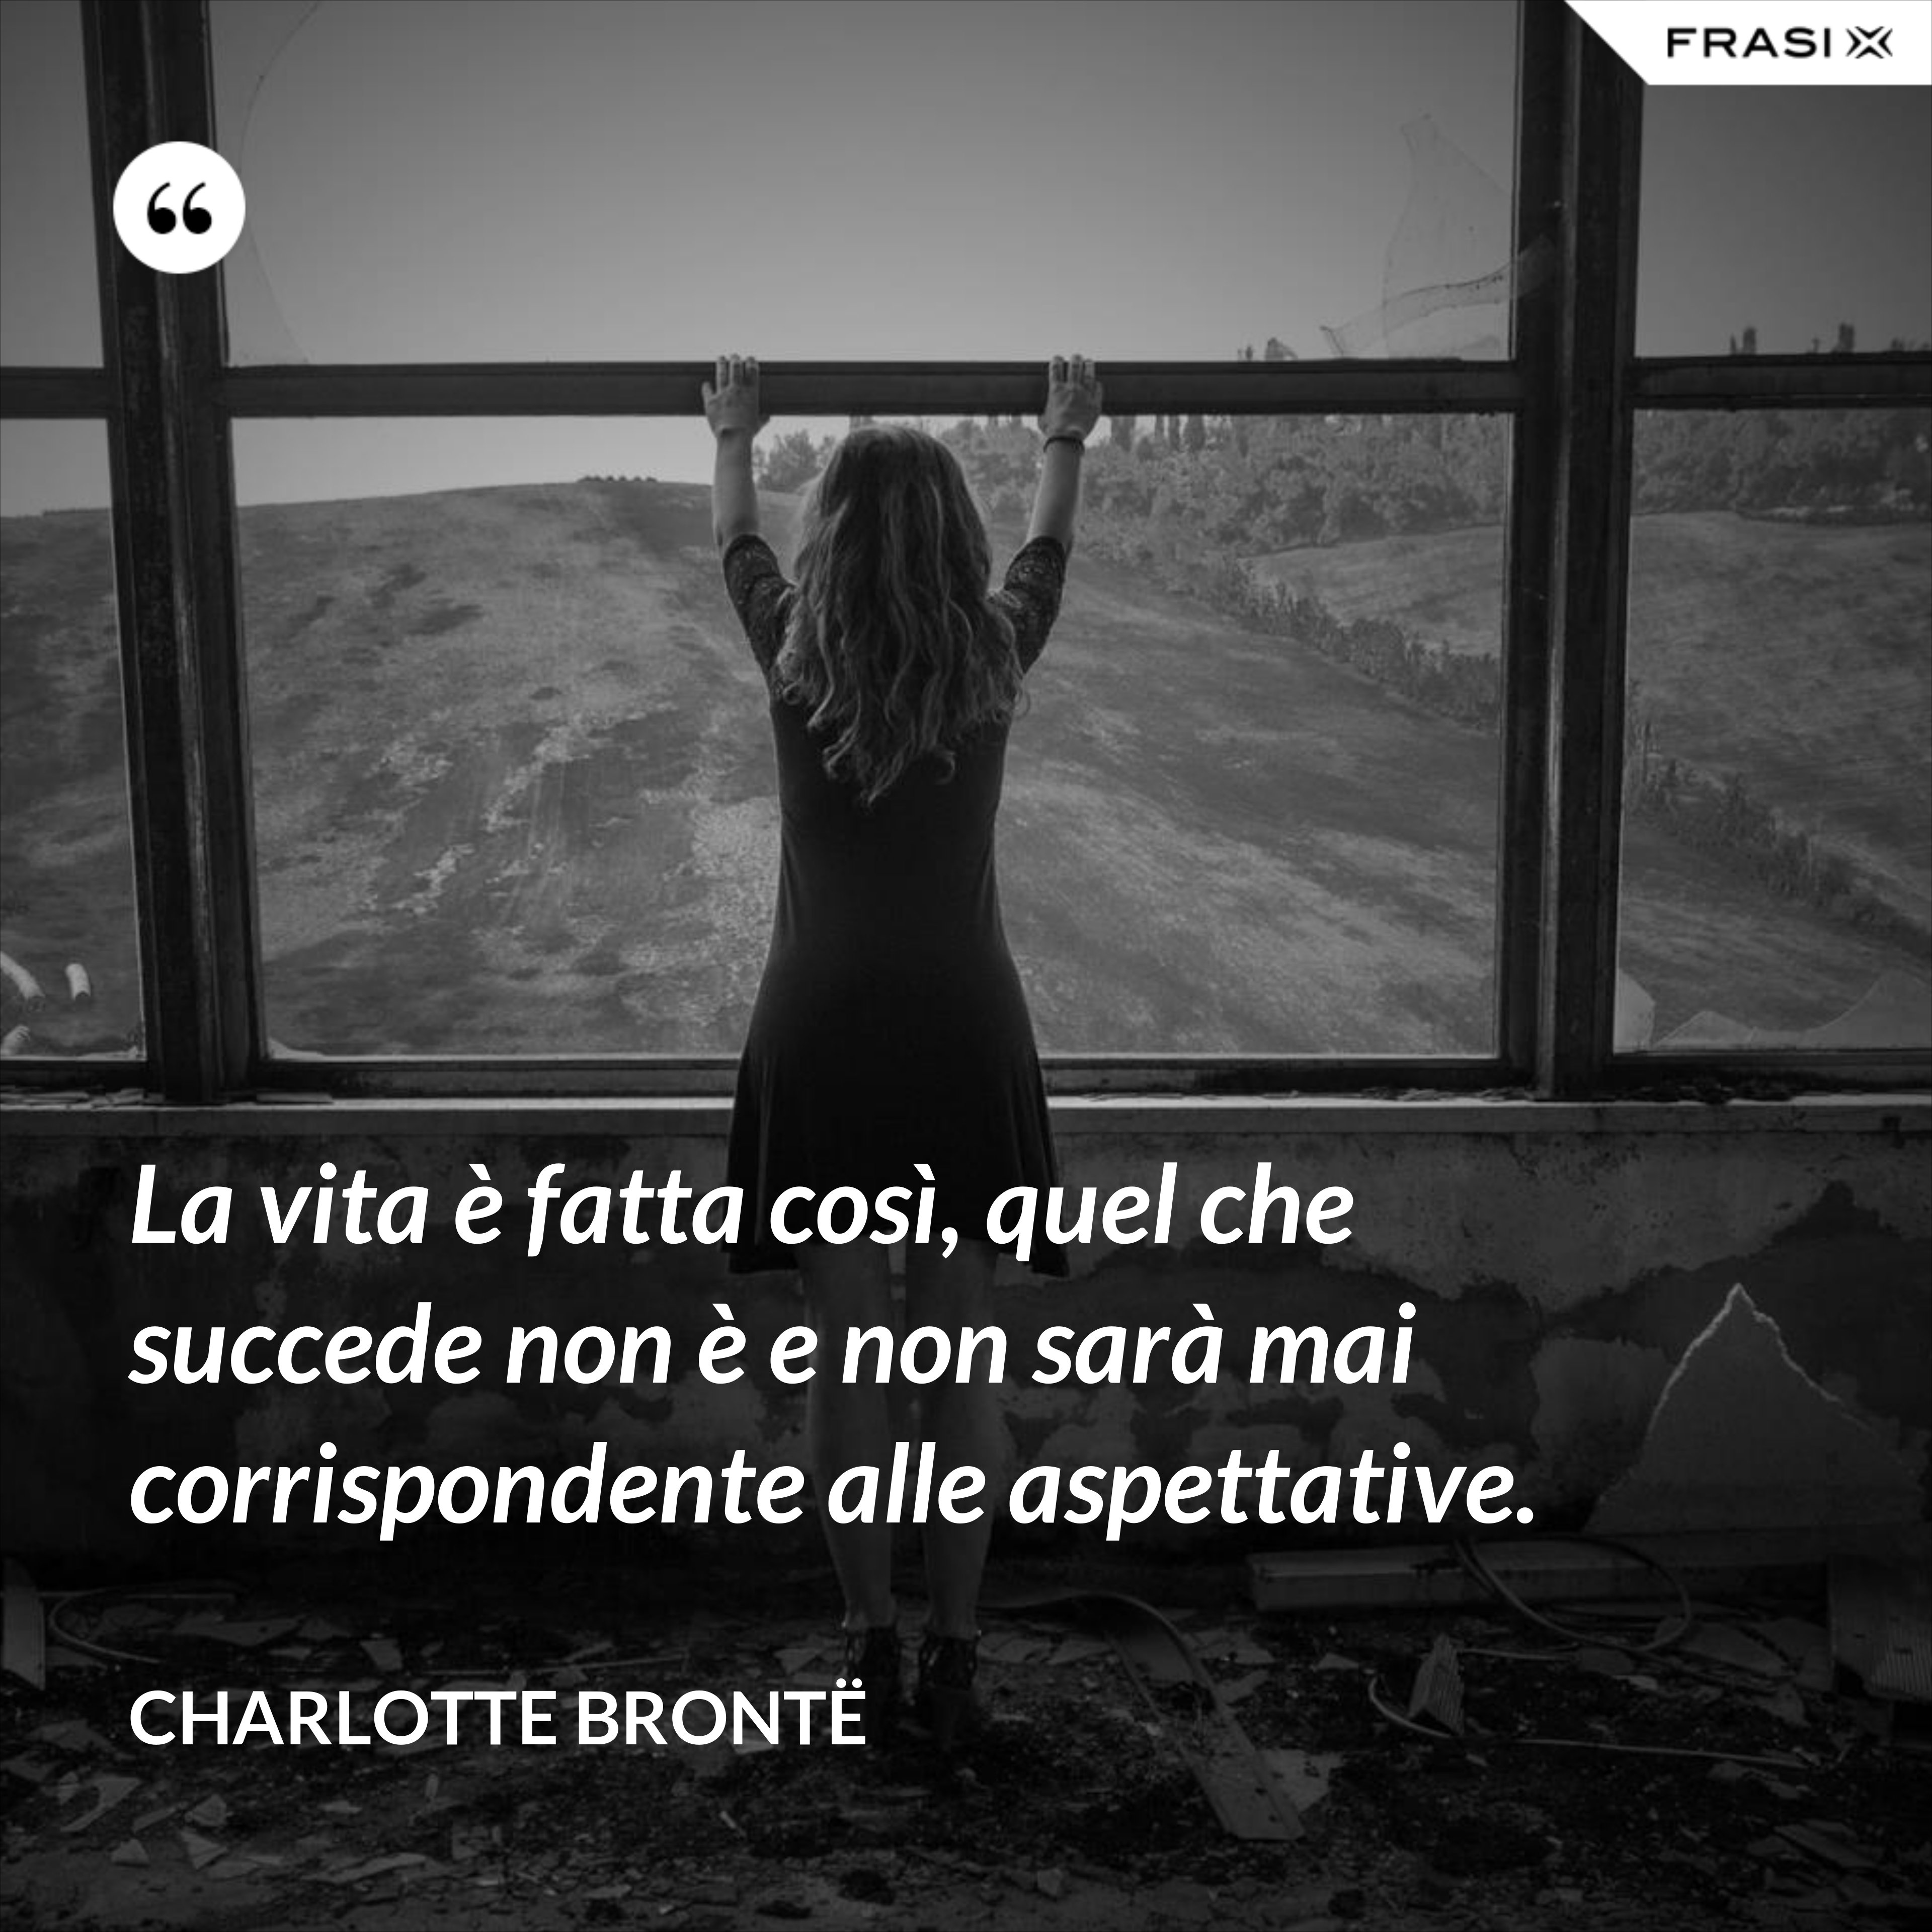 La vita è fatta così, quel che succede non è e non sarà mai corrispondente alle aspettative. - Charlotte Brontë